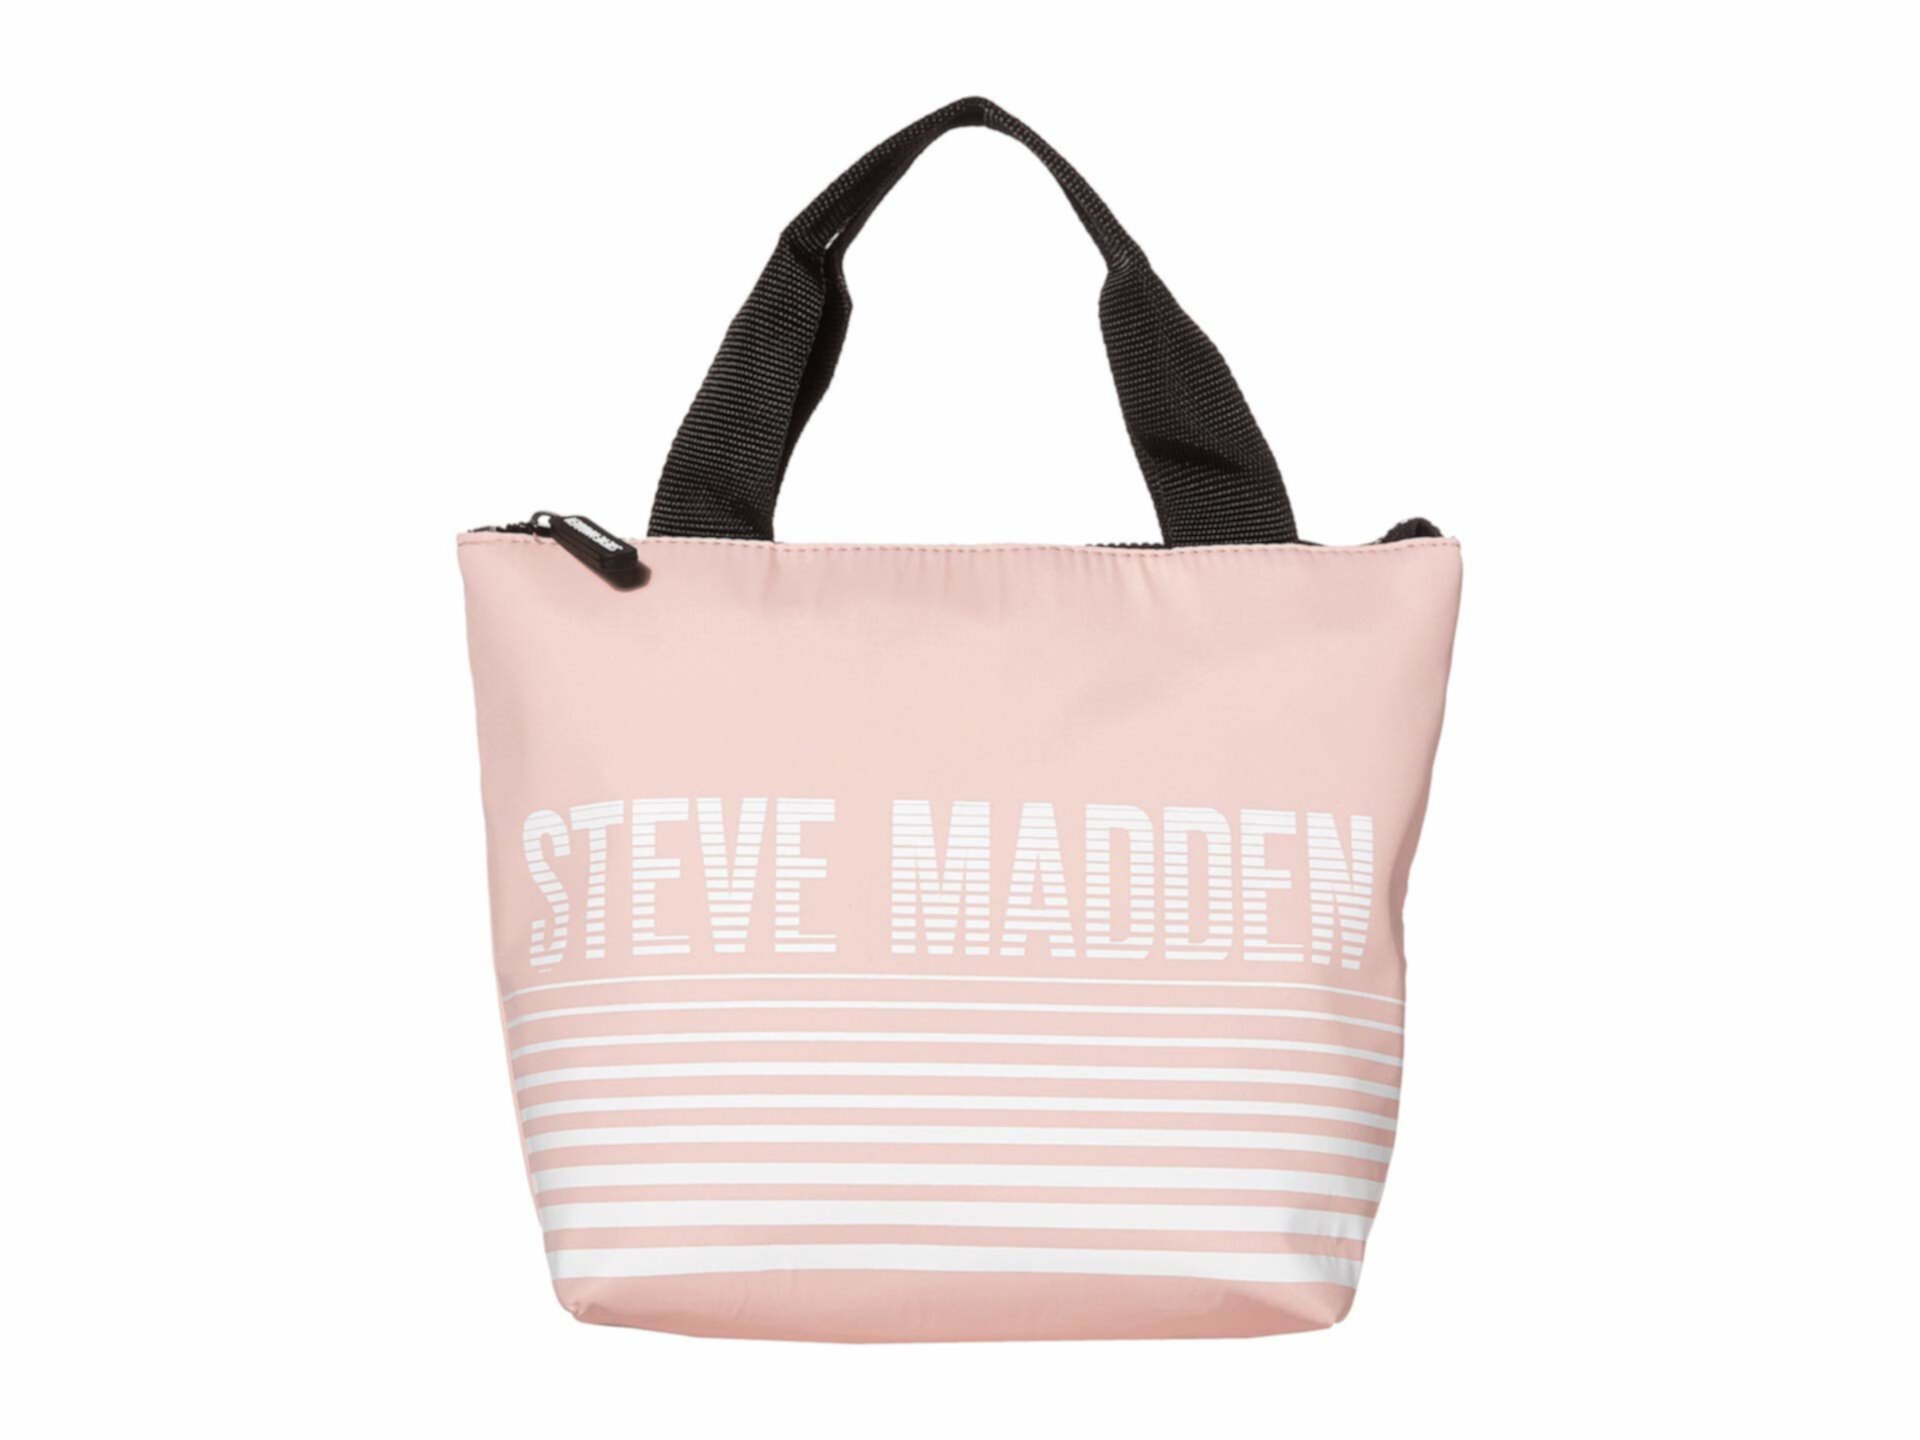 Изолированная большая сумка с логотипом Steve Madden